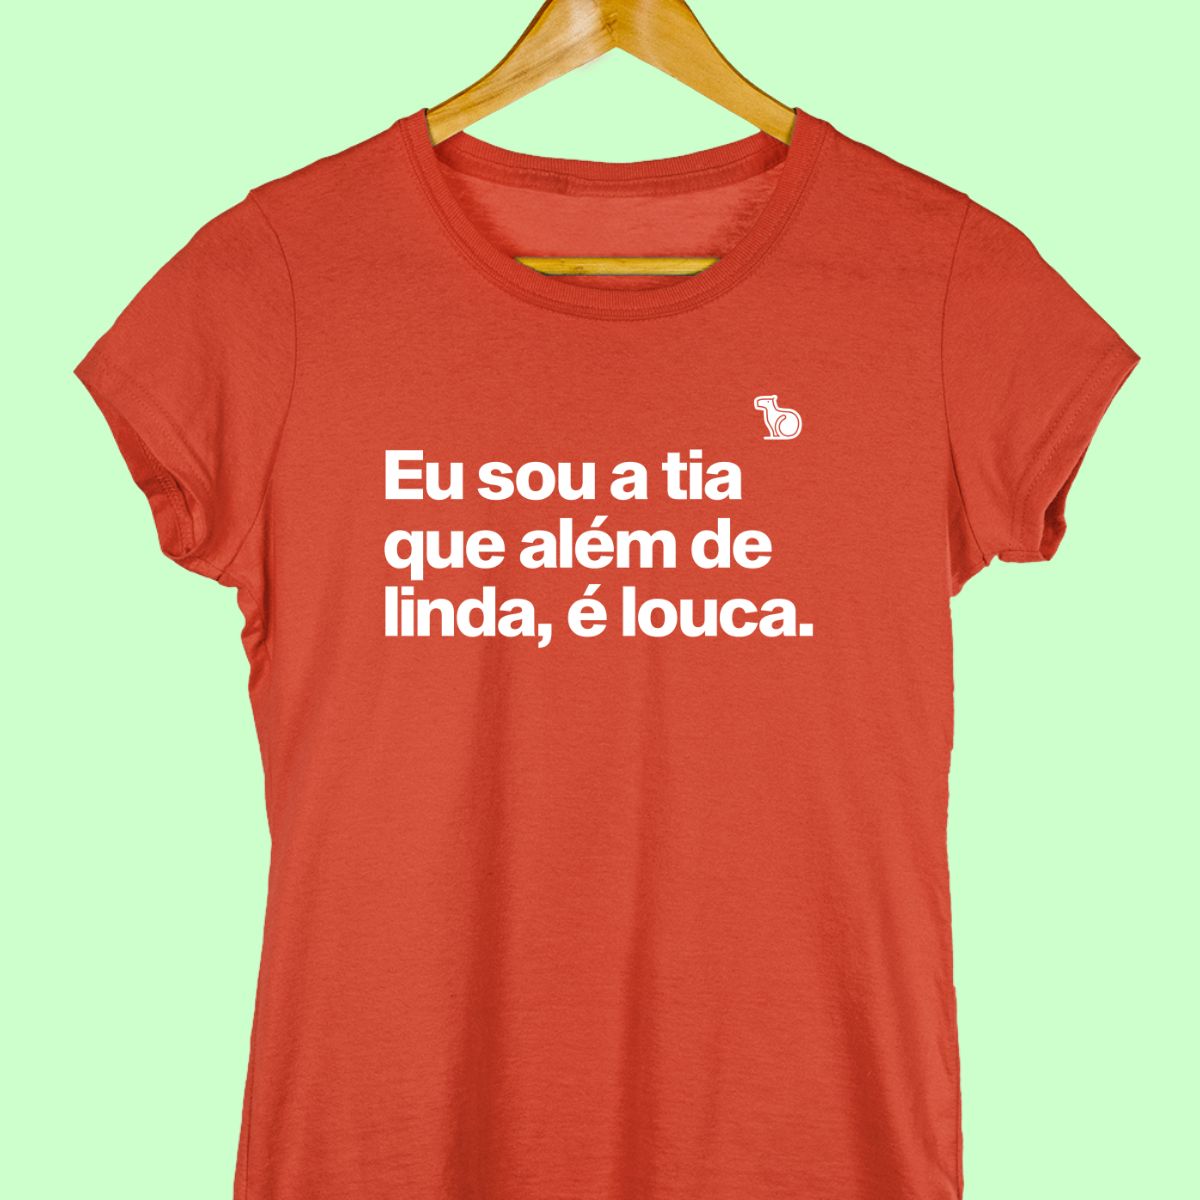 Camiseta com a frase "Eu sou a tia que além de linda, é louca." Feminina vermelha.